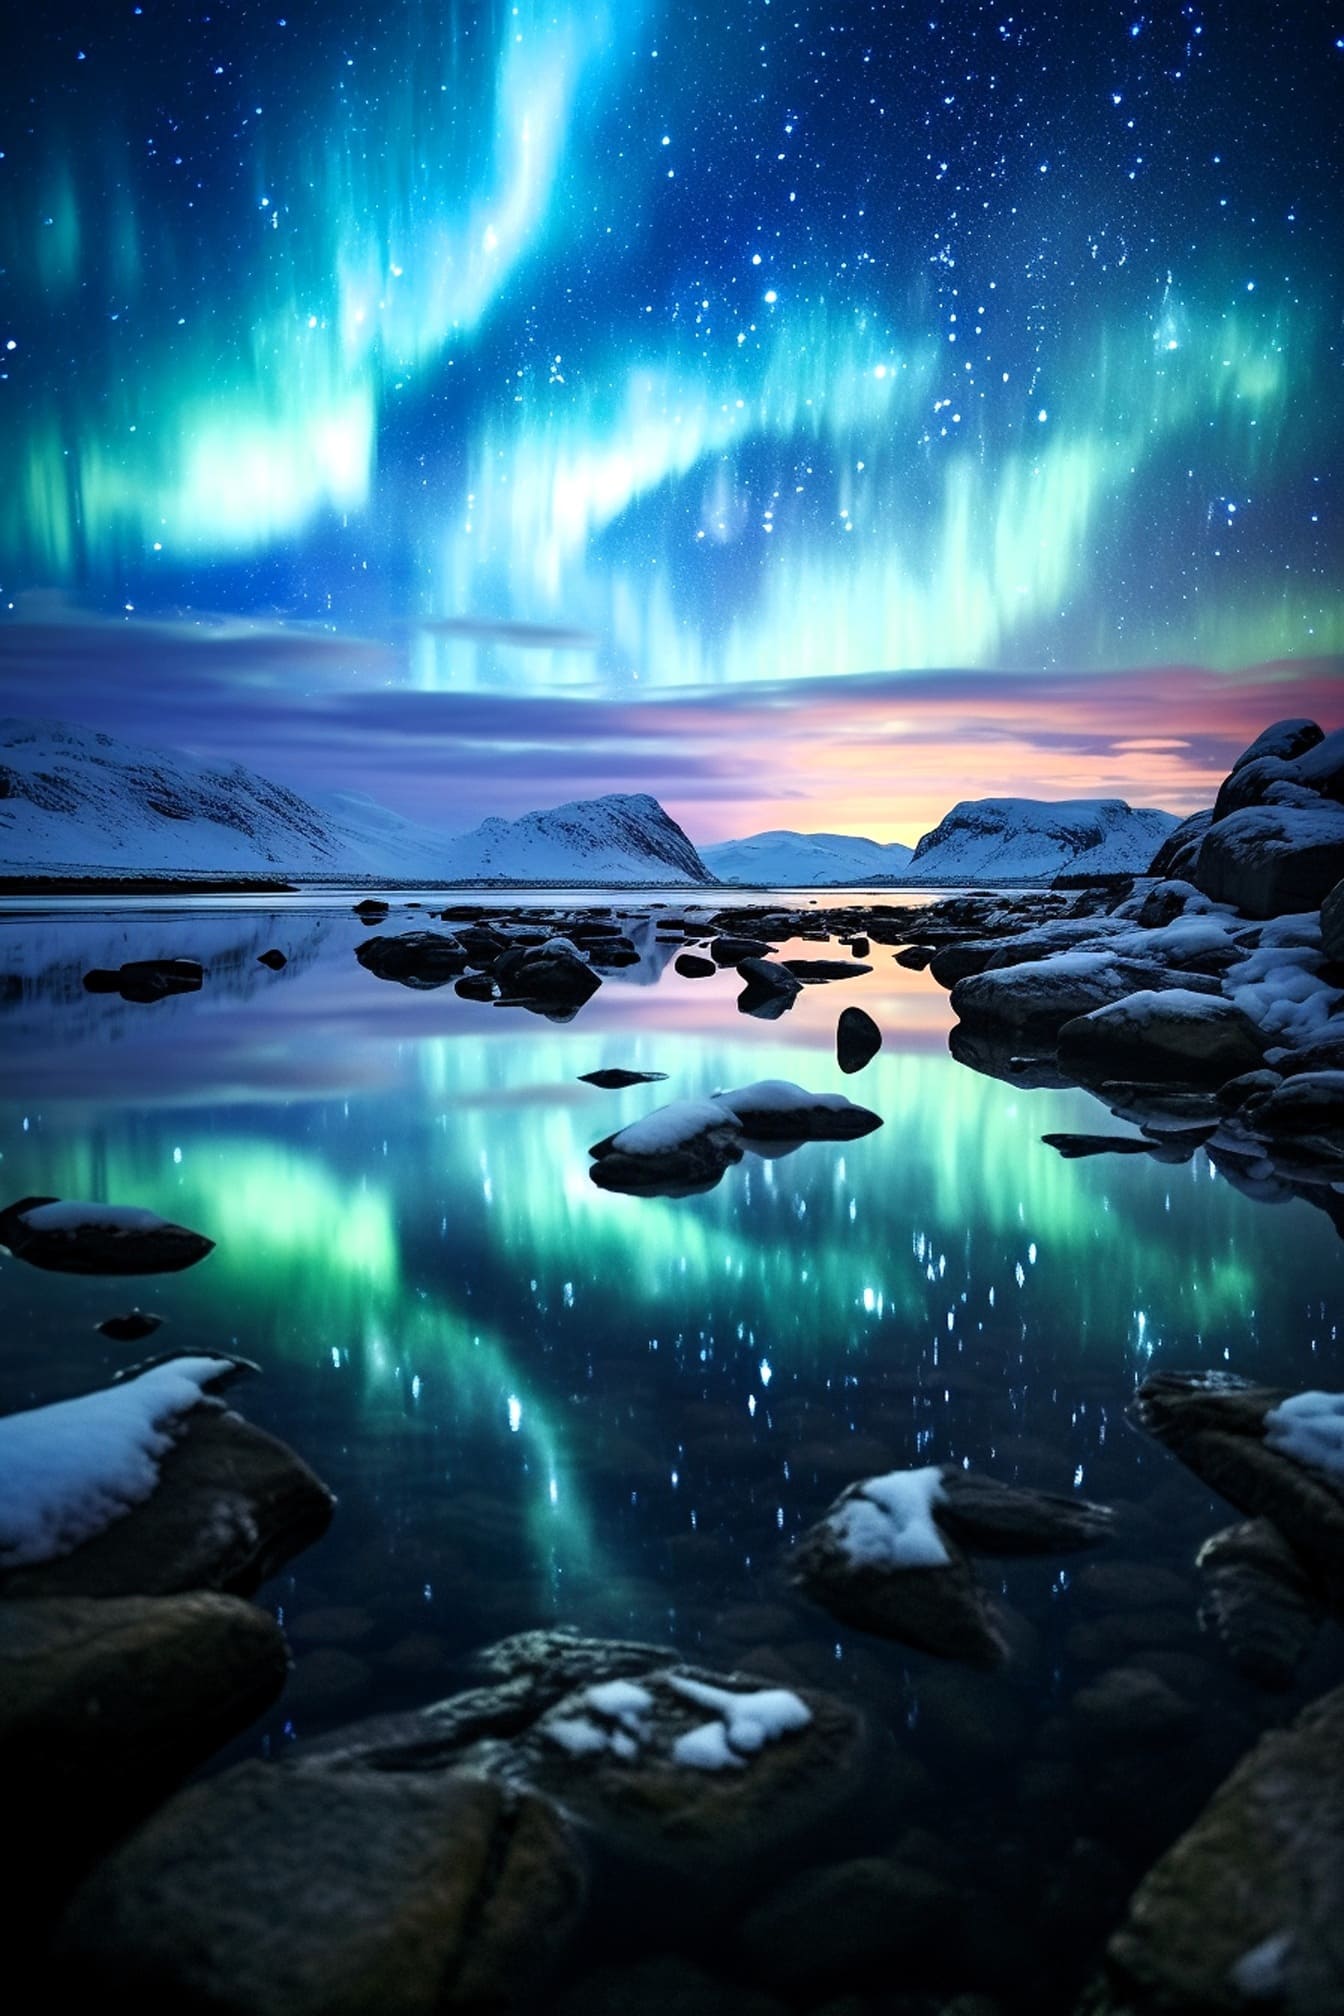 Blask nieba zorza polarna na arktycznym pięknym wieczornym krajobrazie